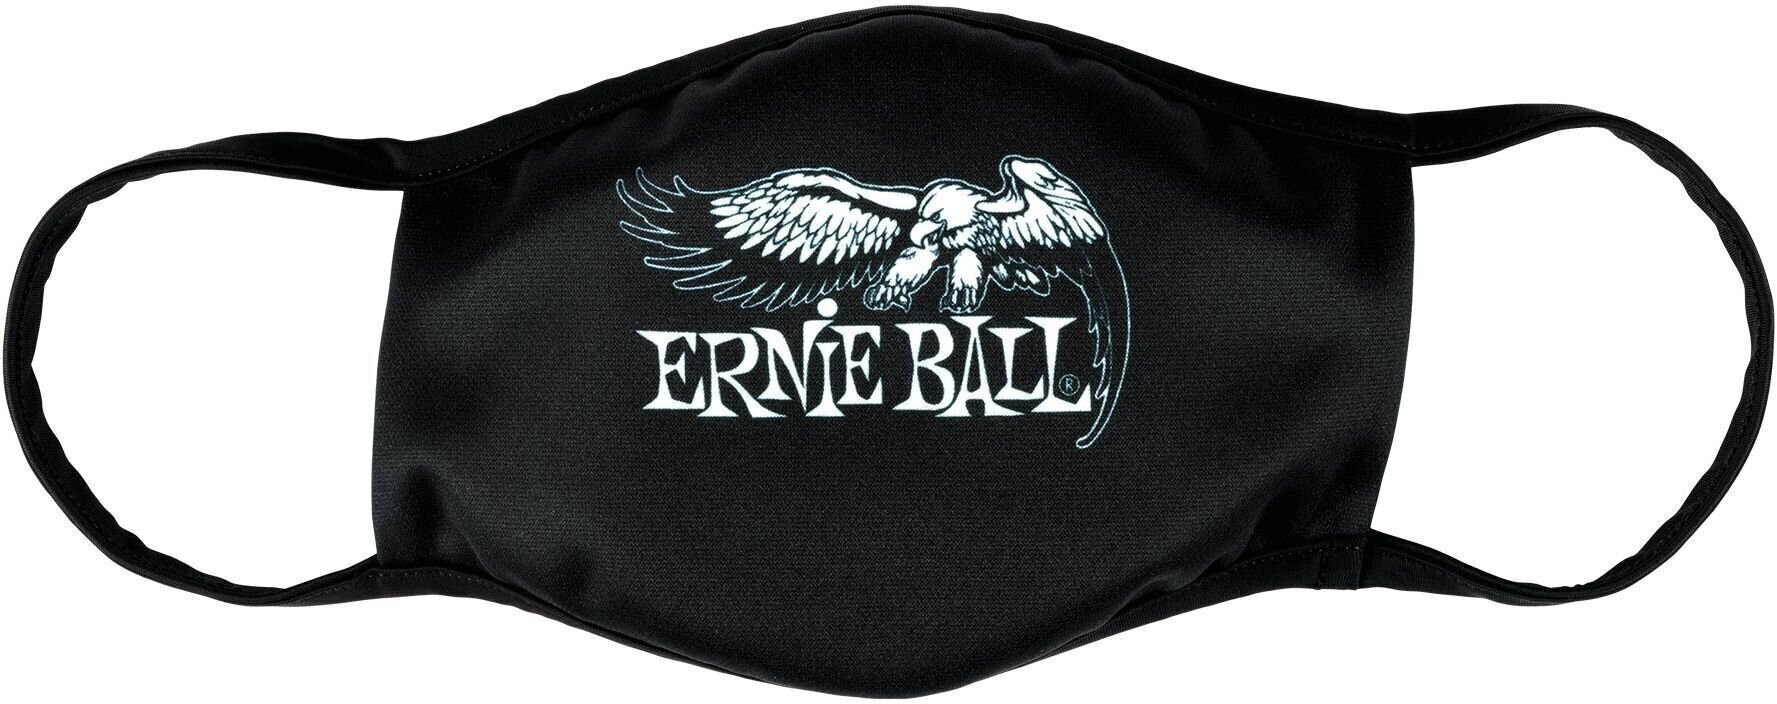 Schutzmaske Ernie Ball 4909 Schutzmaske